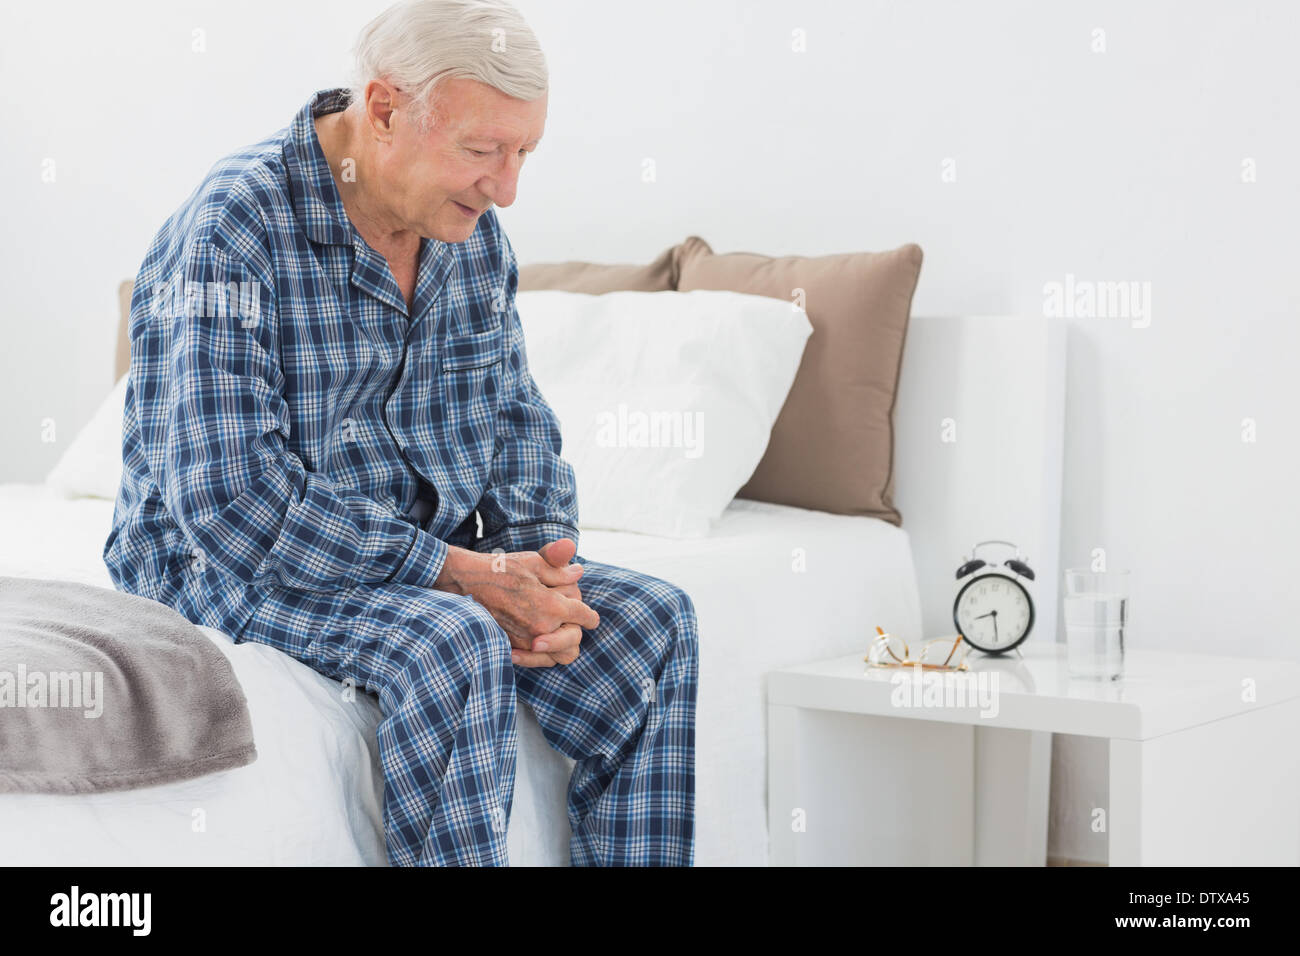 Пижаме ляжет. Старик в пижаме. Пижамы для пенсионеров. Дед в пижаме. Пожилой мужчина в пижаме.